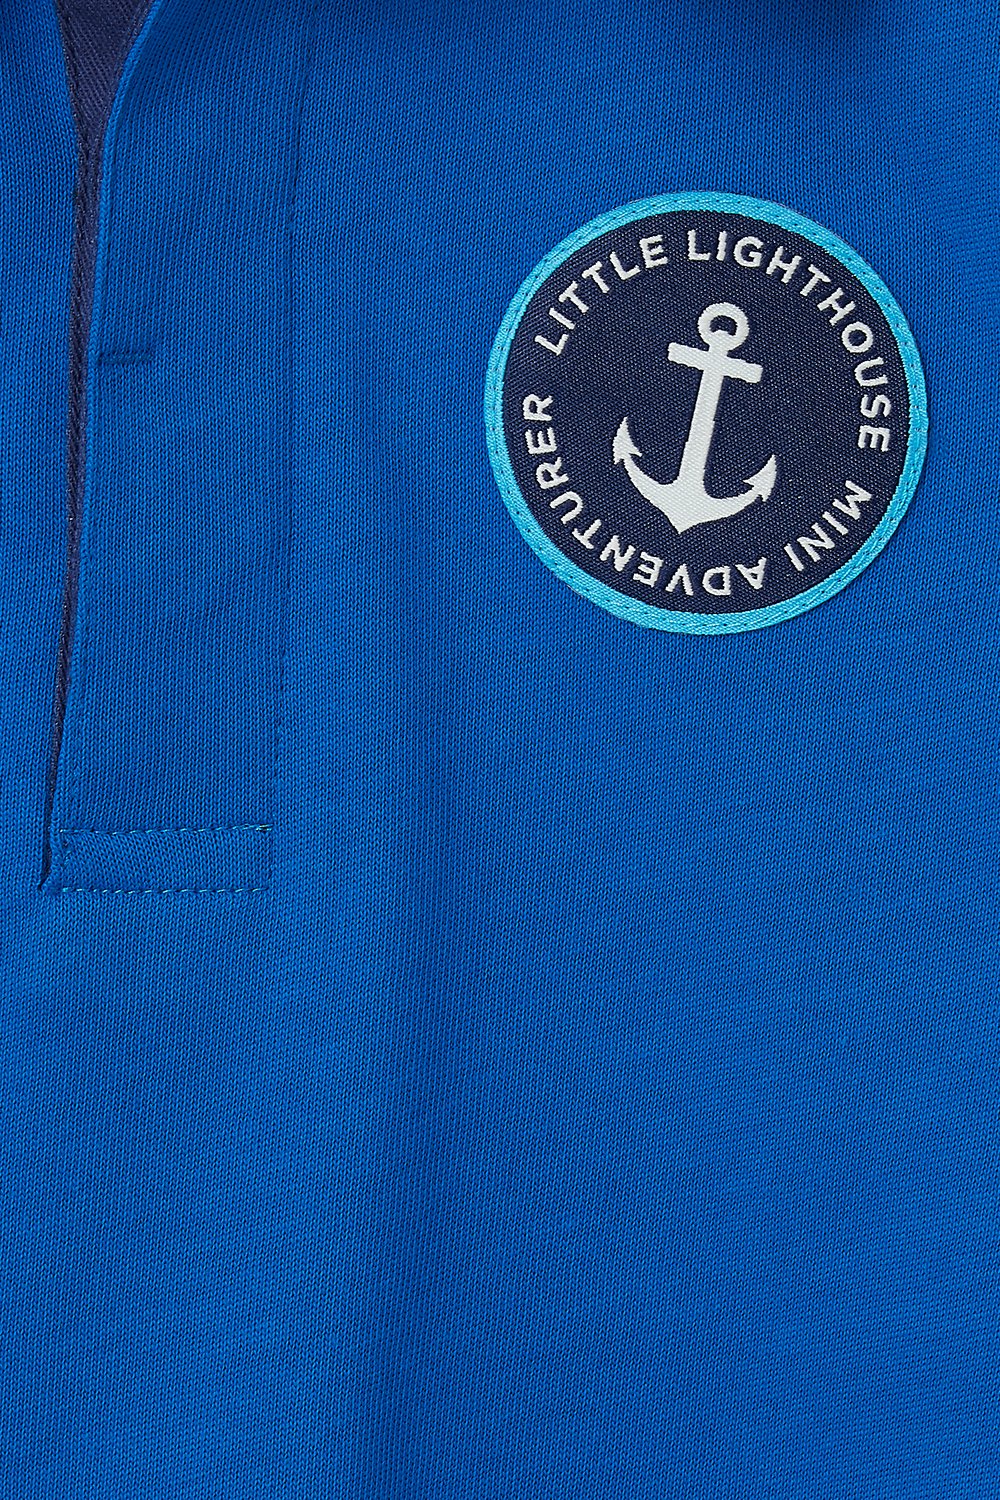 Lighthouse Kids 'Alfie' Long Sleeve Rugby Shirt - Ocean Blue